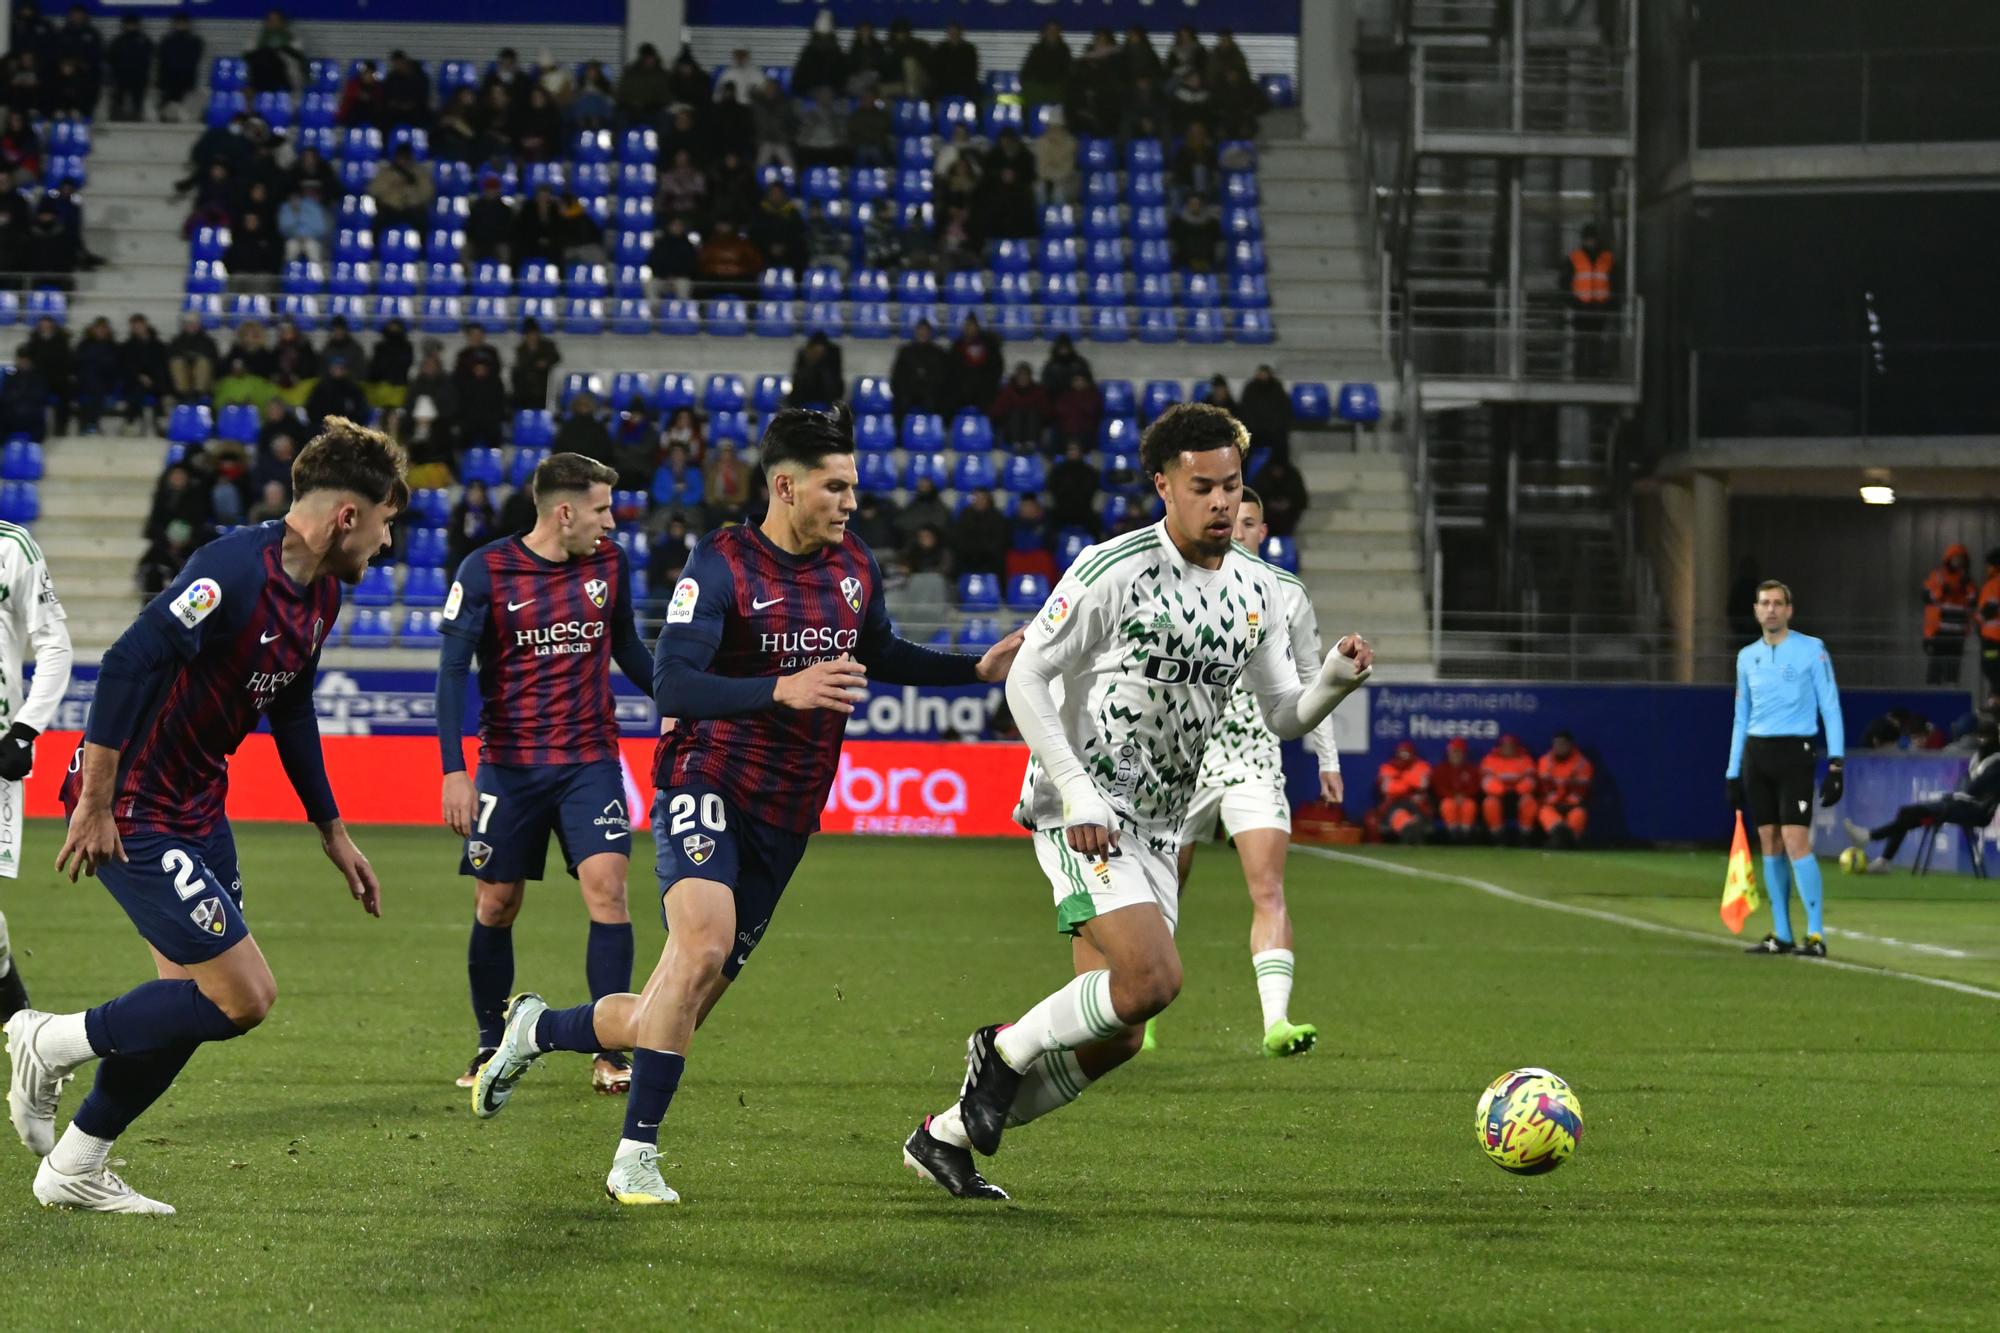 EN IMÁGENES: El partido entre el Real Oviedo y el Huesca